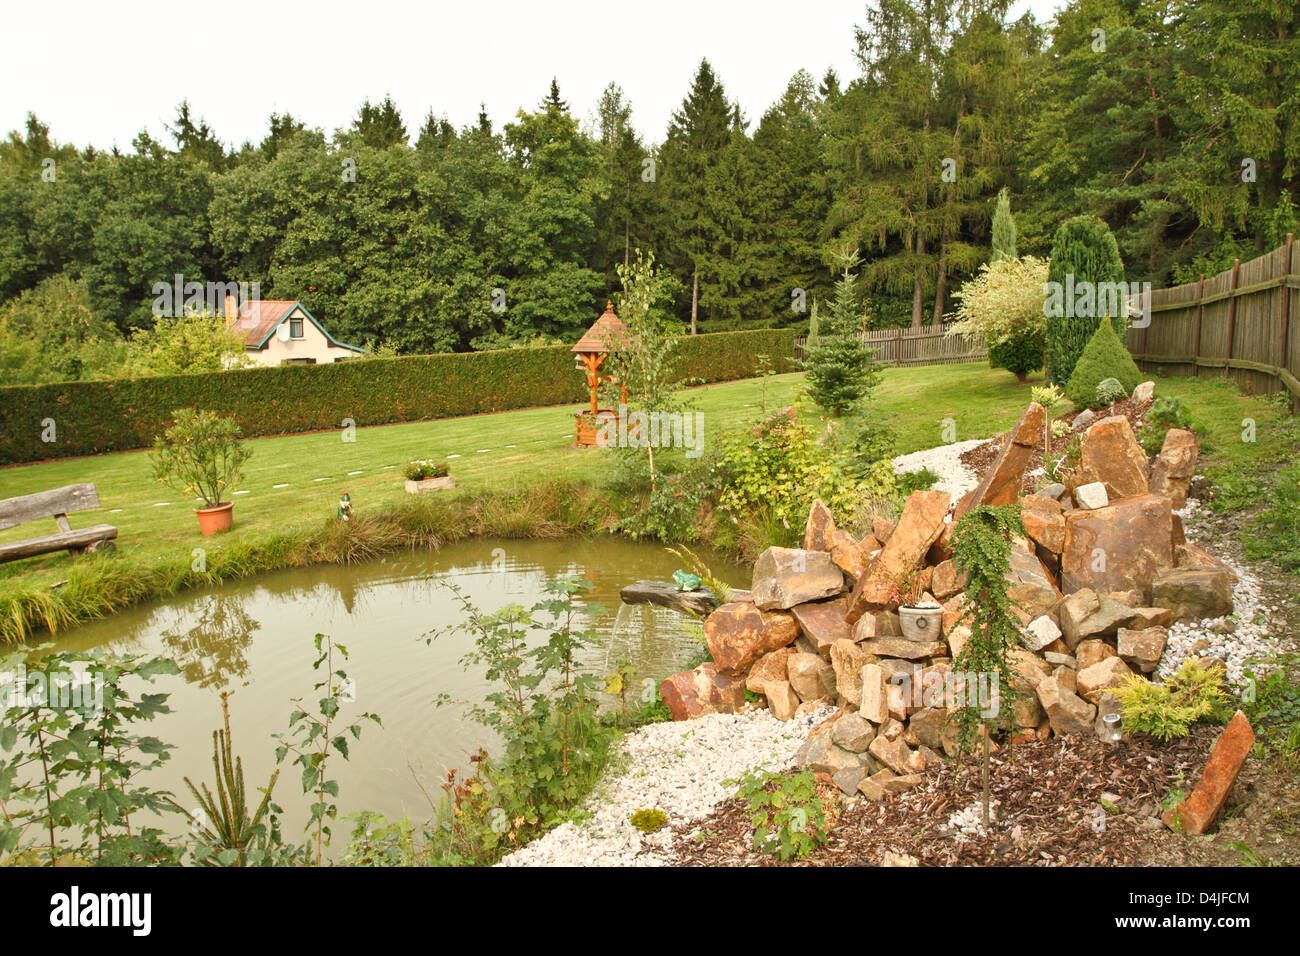 Jardin avec étang, pierres et bois de chauffage Banque D'Images